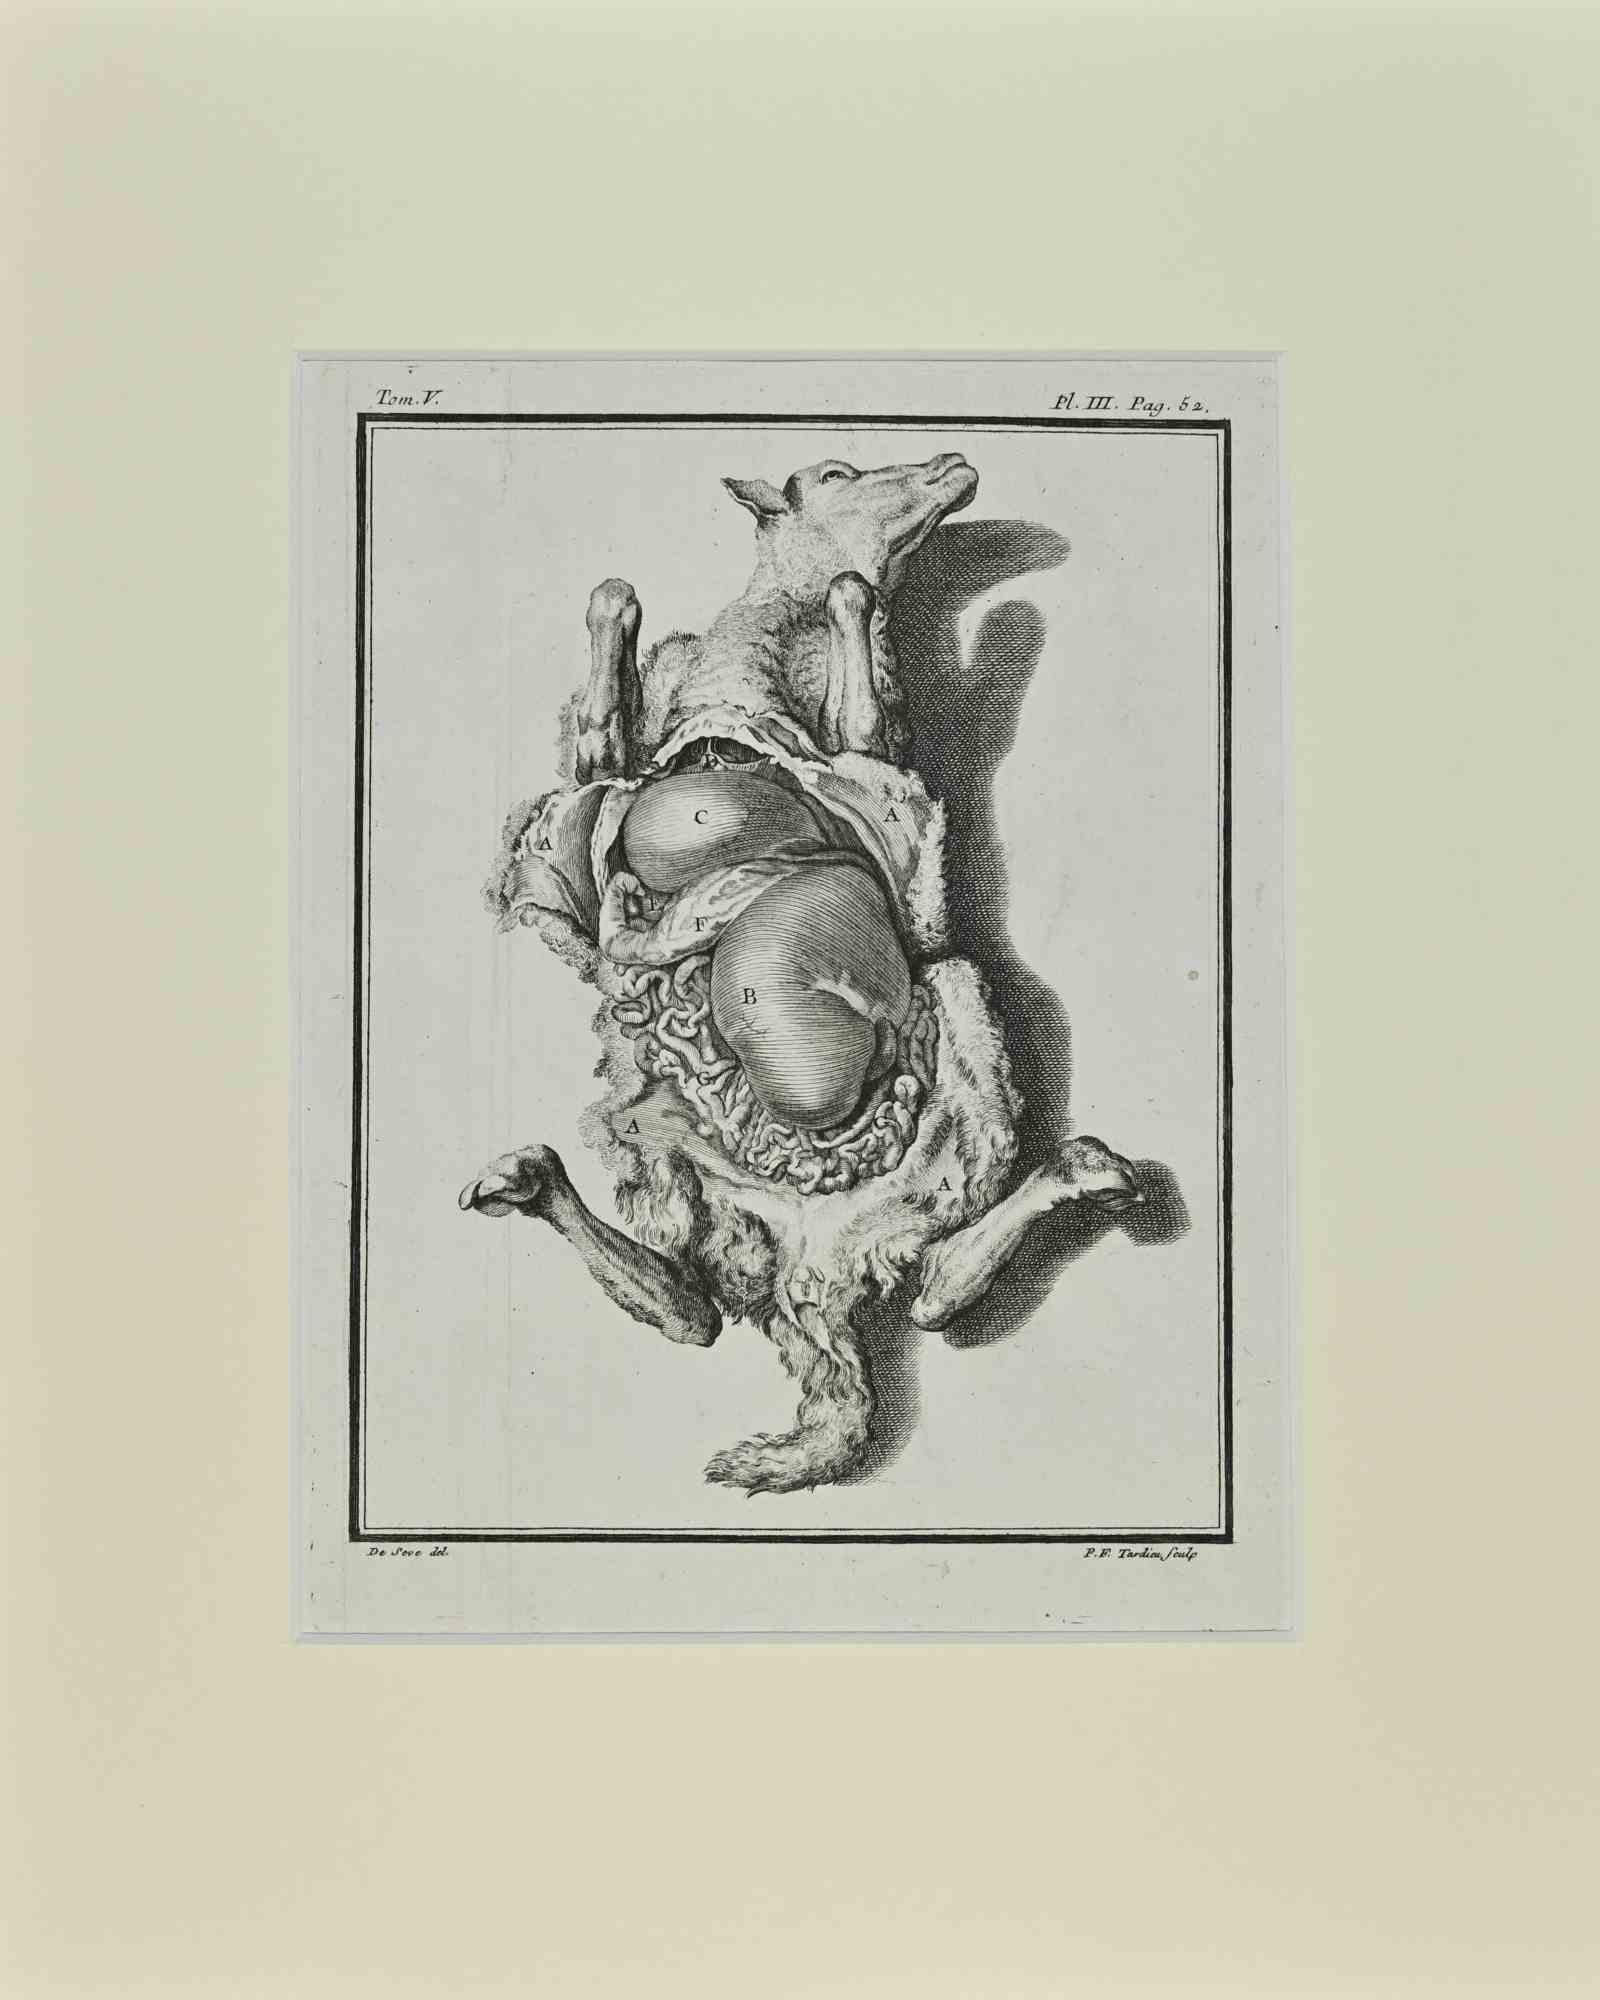 Animal Print Jacques de Seve - The Dissected Veal - Gravure de Jacques De Sève - 1771